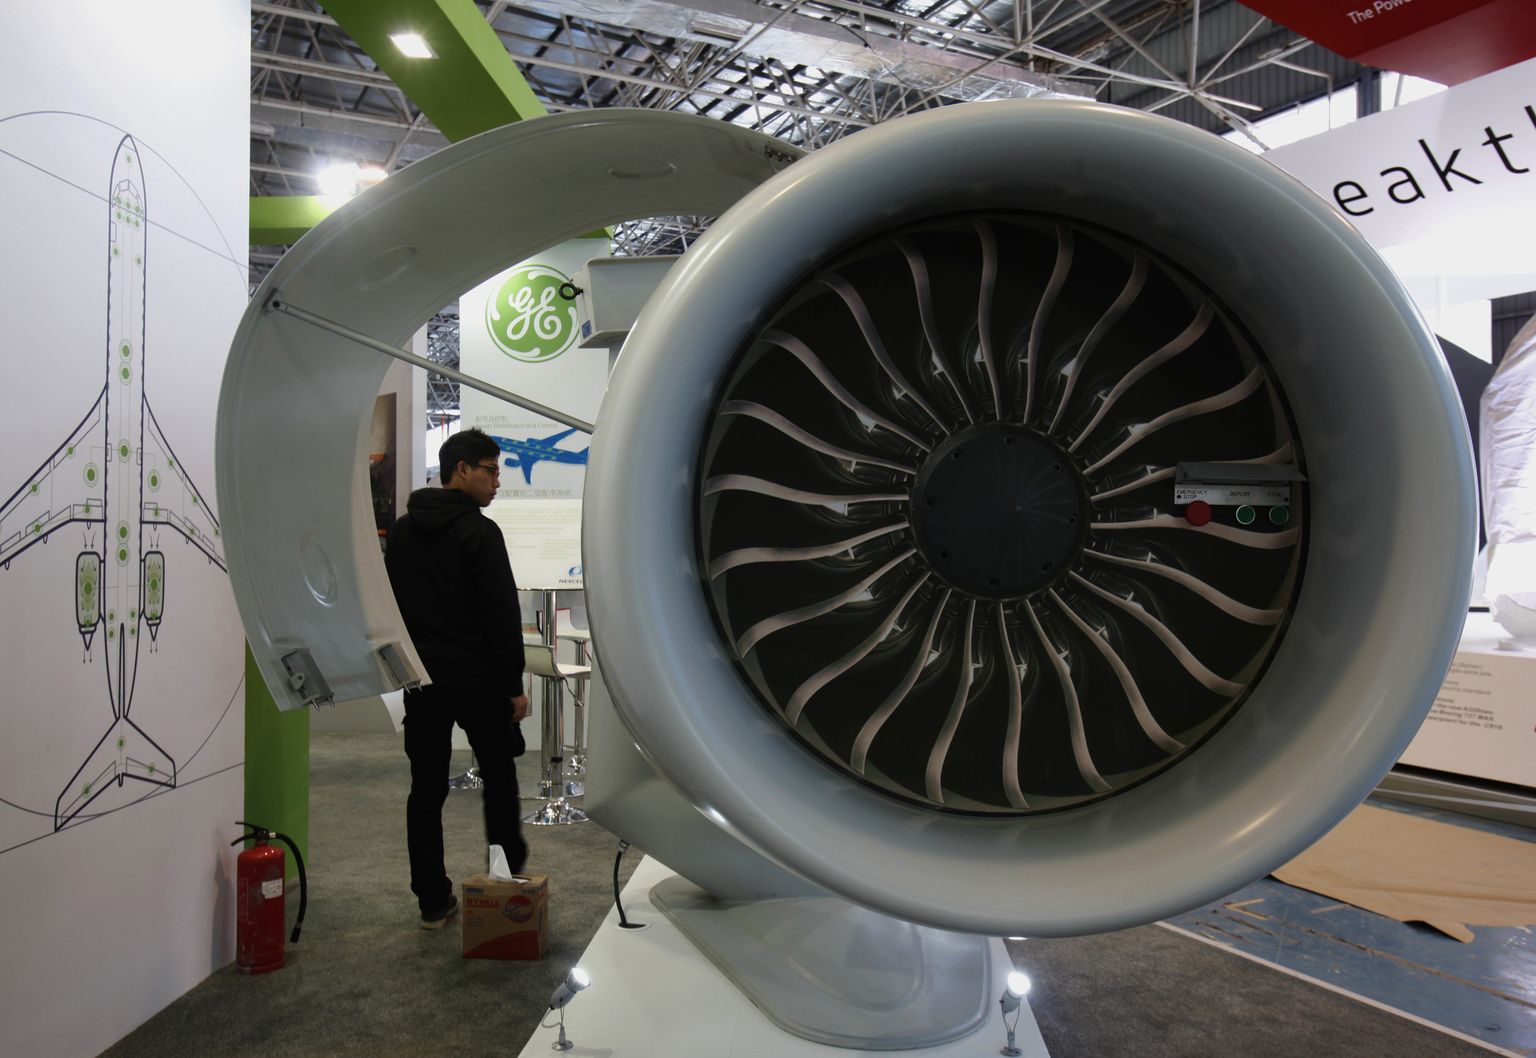 GE Aviationi ja Safran Groupi ühisettevõtte lennikimootori mudel. Foto on illustratiivne.